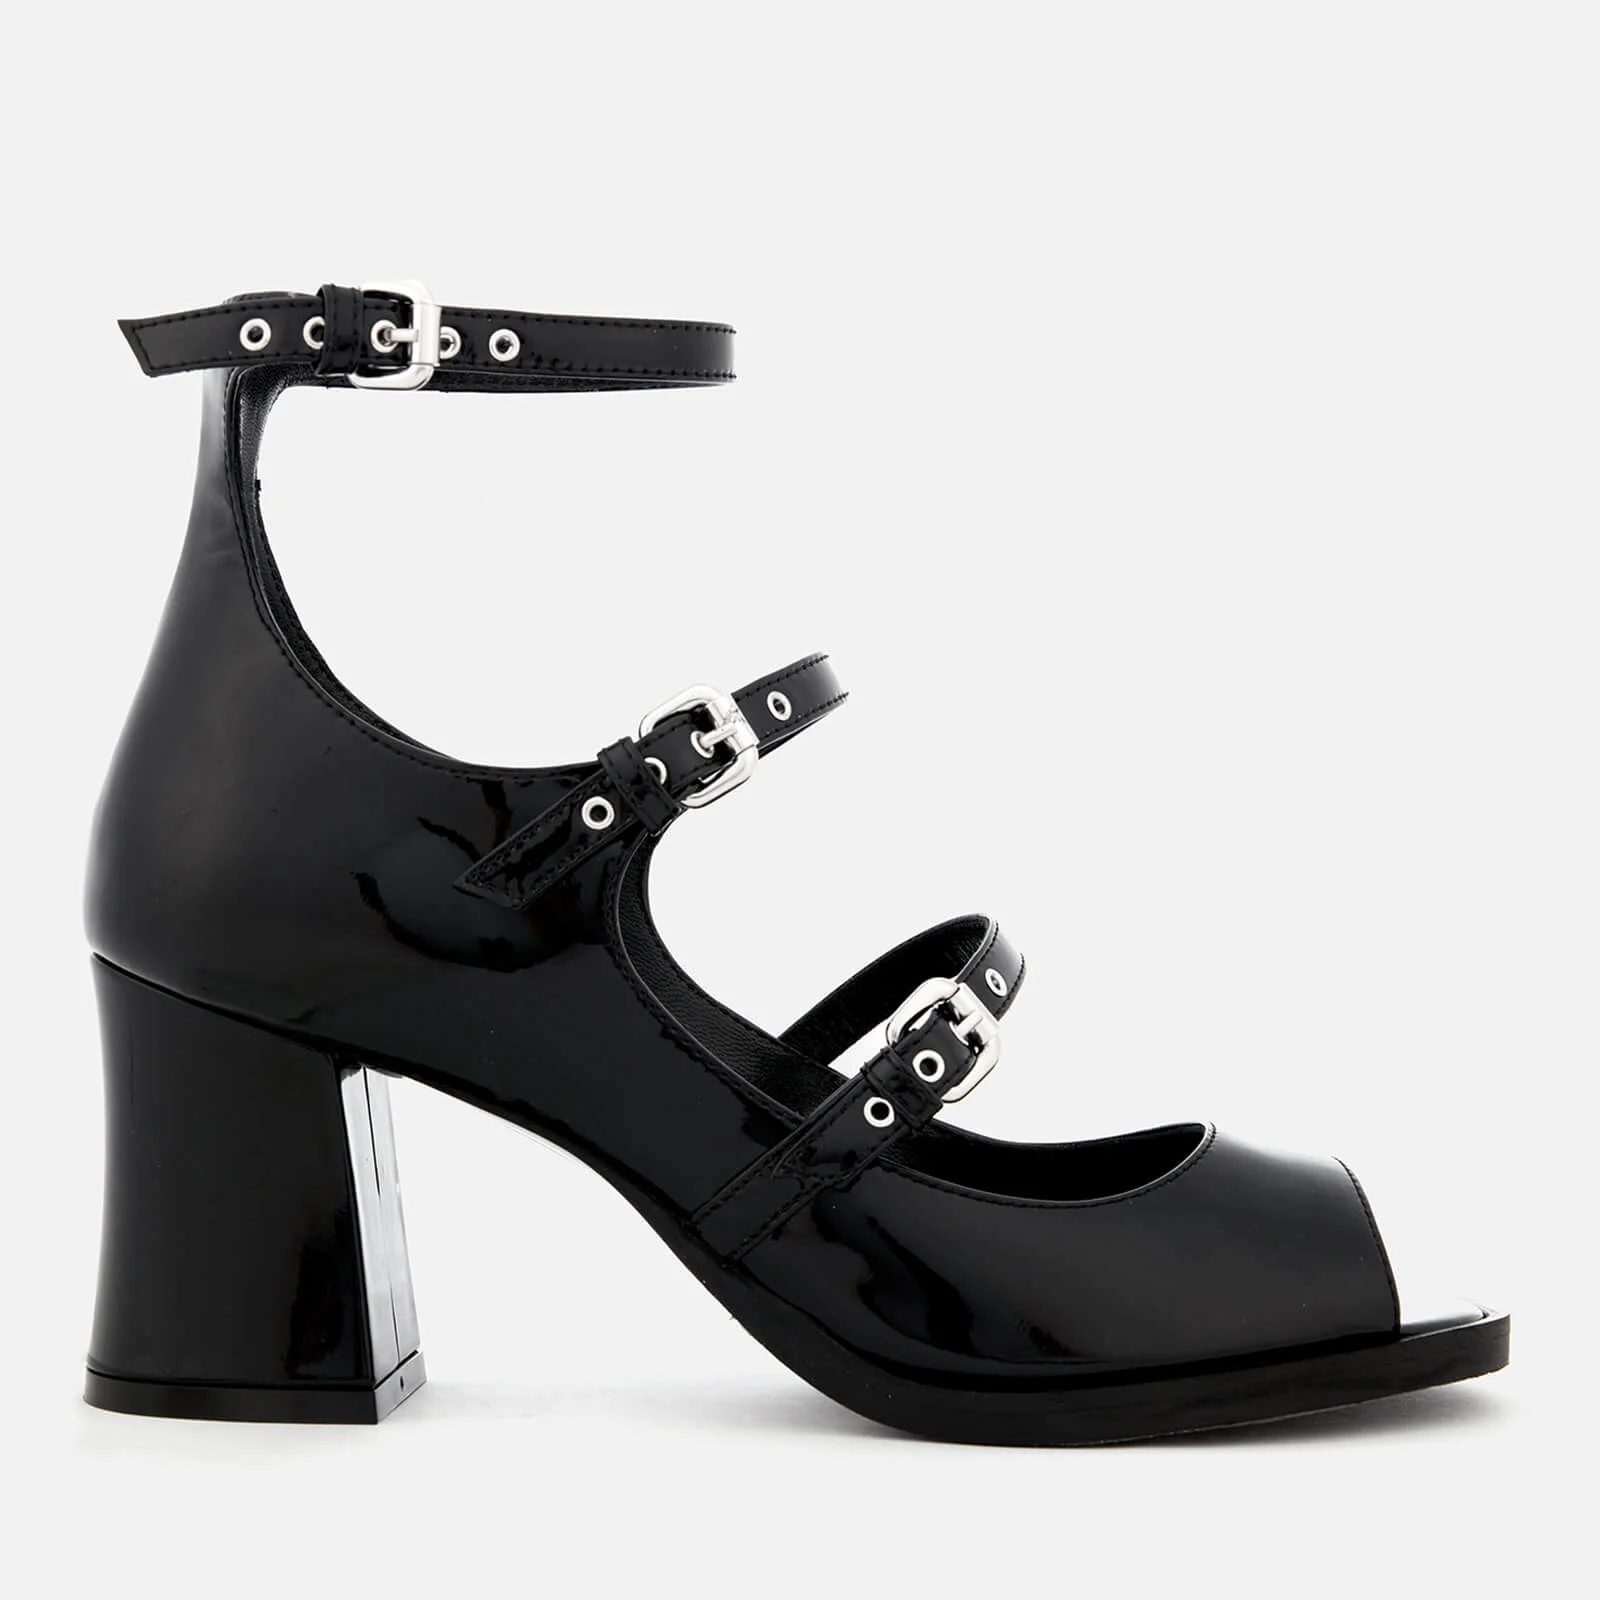 McQ Alexander McQueen Women's Angel 3 Strap Heel Sandals - Black Image 1